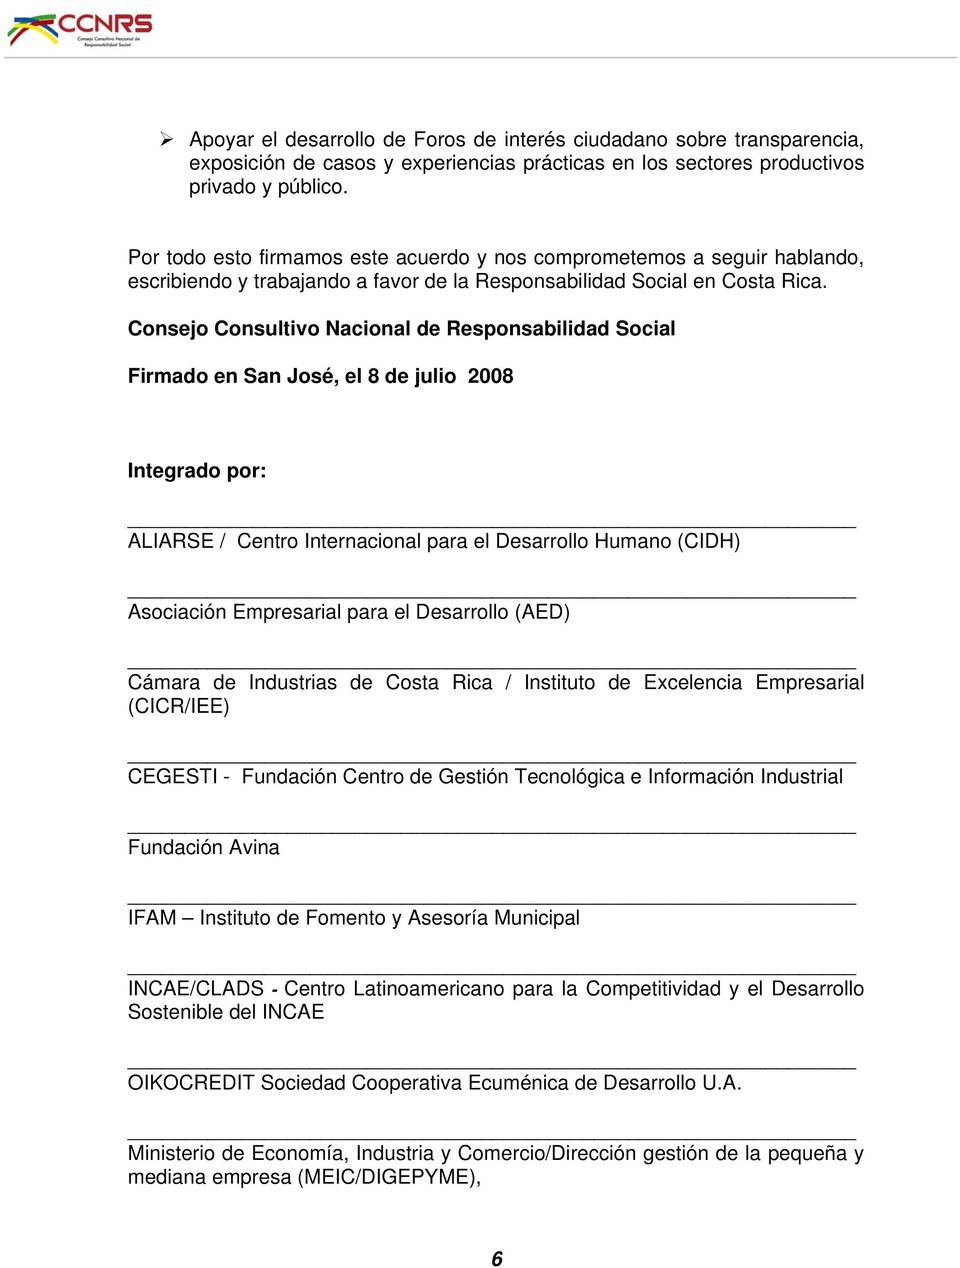 Consejo Consultivo Nacional de Responsabilidad Social Firmado en San José, el 8 de julio 2008 Integrado por: ALIARSE / Centro Internacional para el Desarrollo Humano (CIDH) Asociación Empresarial